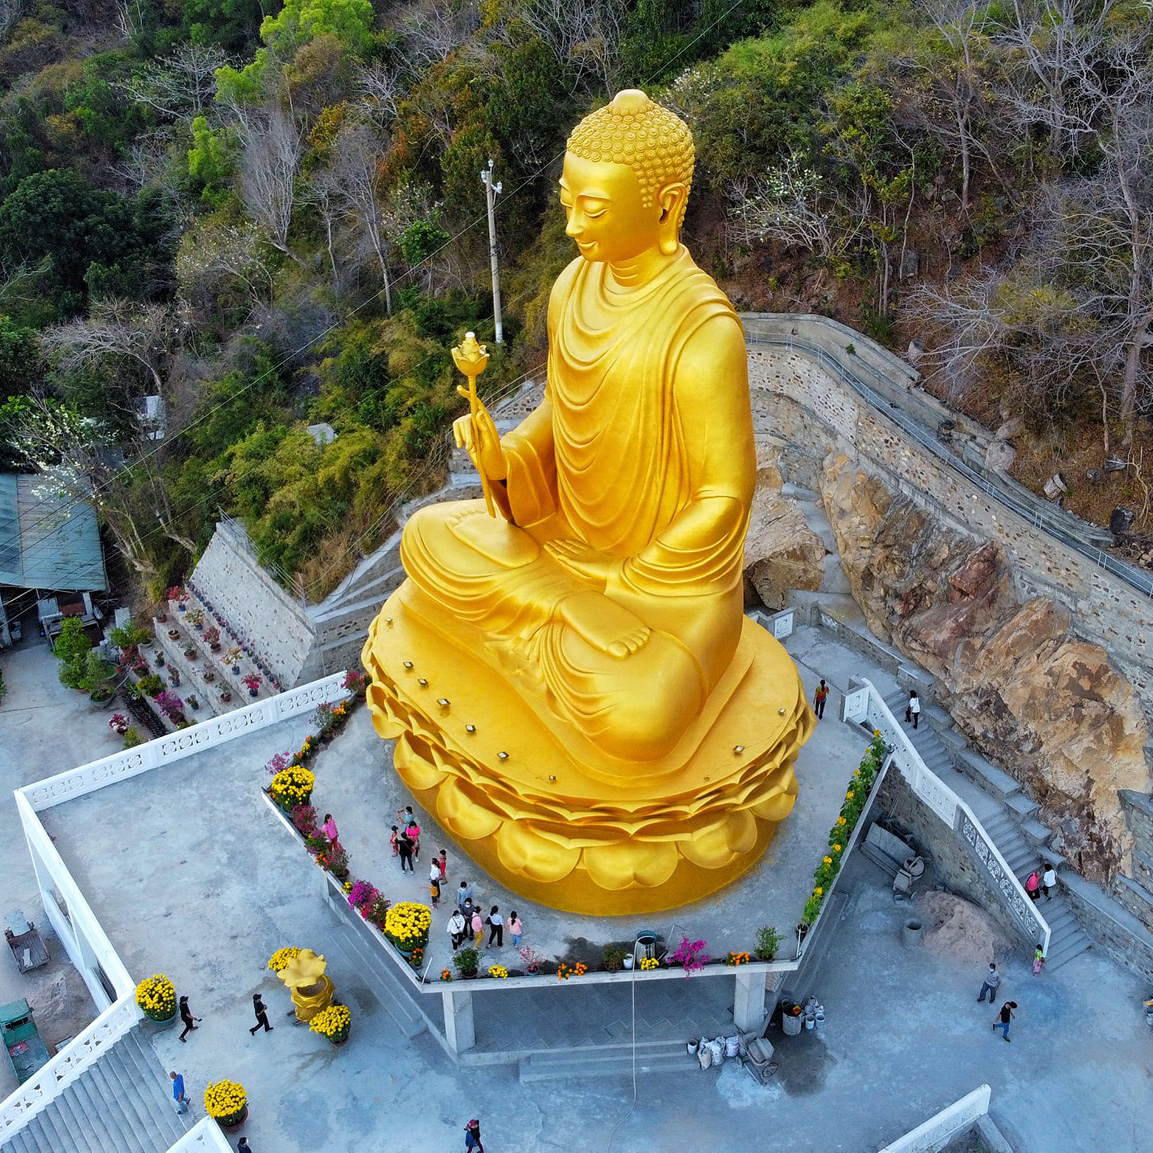 Cầu may đầu năm ở Thiền Viện Chơn Không có tượng Phật bằng vàng độc đáo